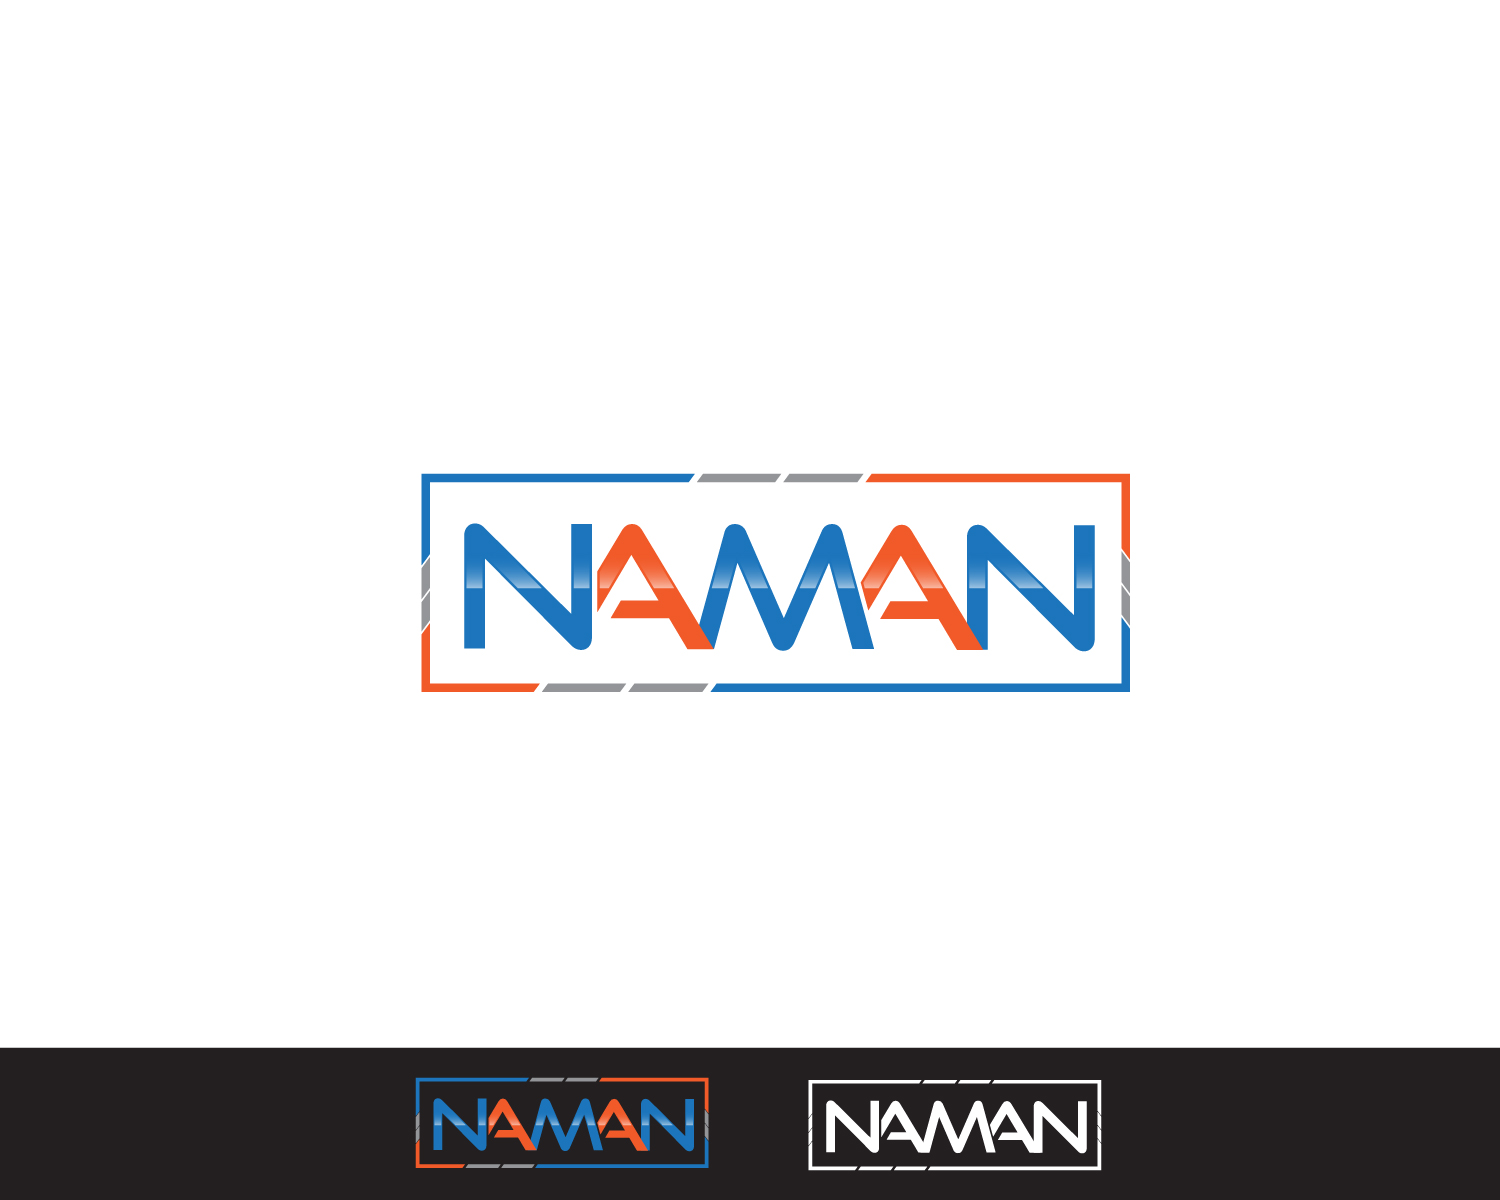 naman-trilogy (Naman )